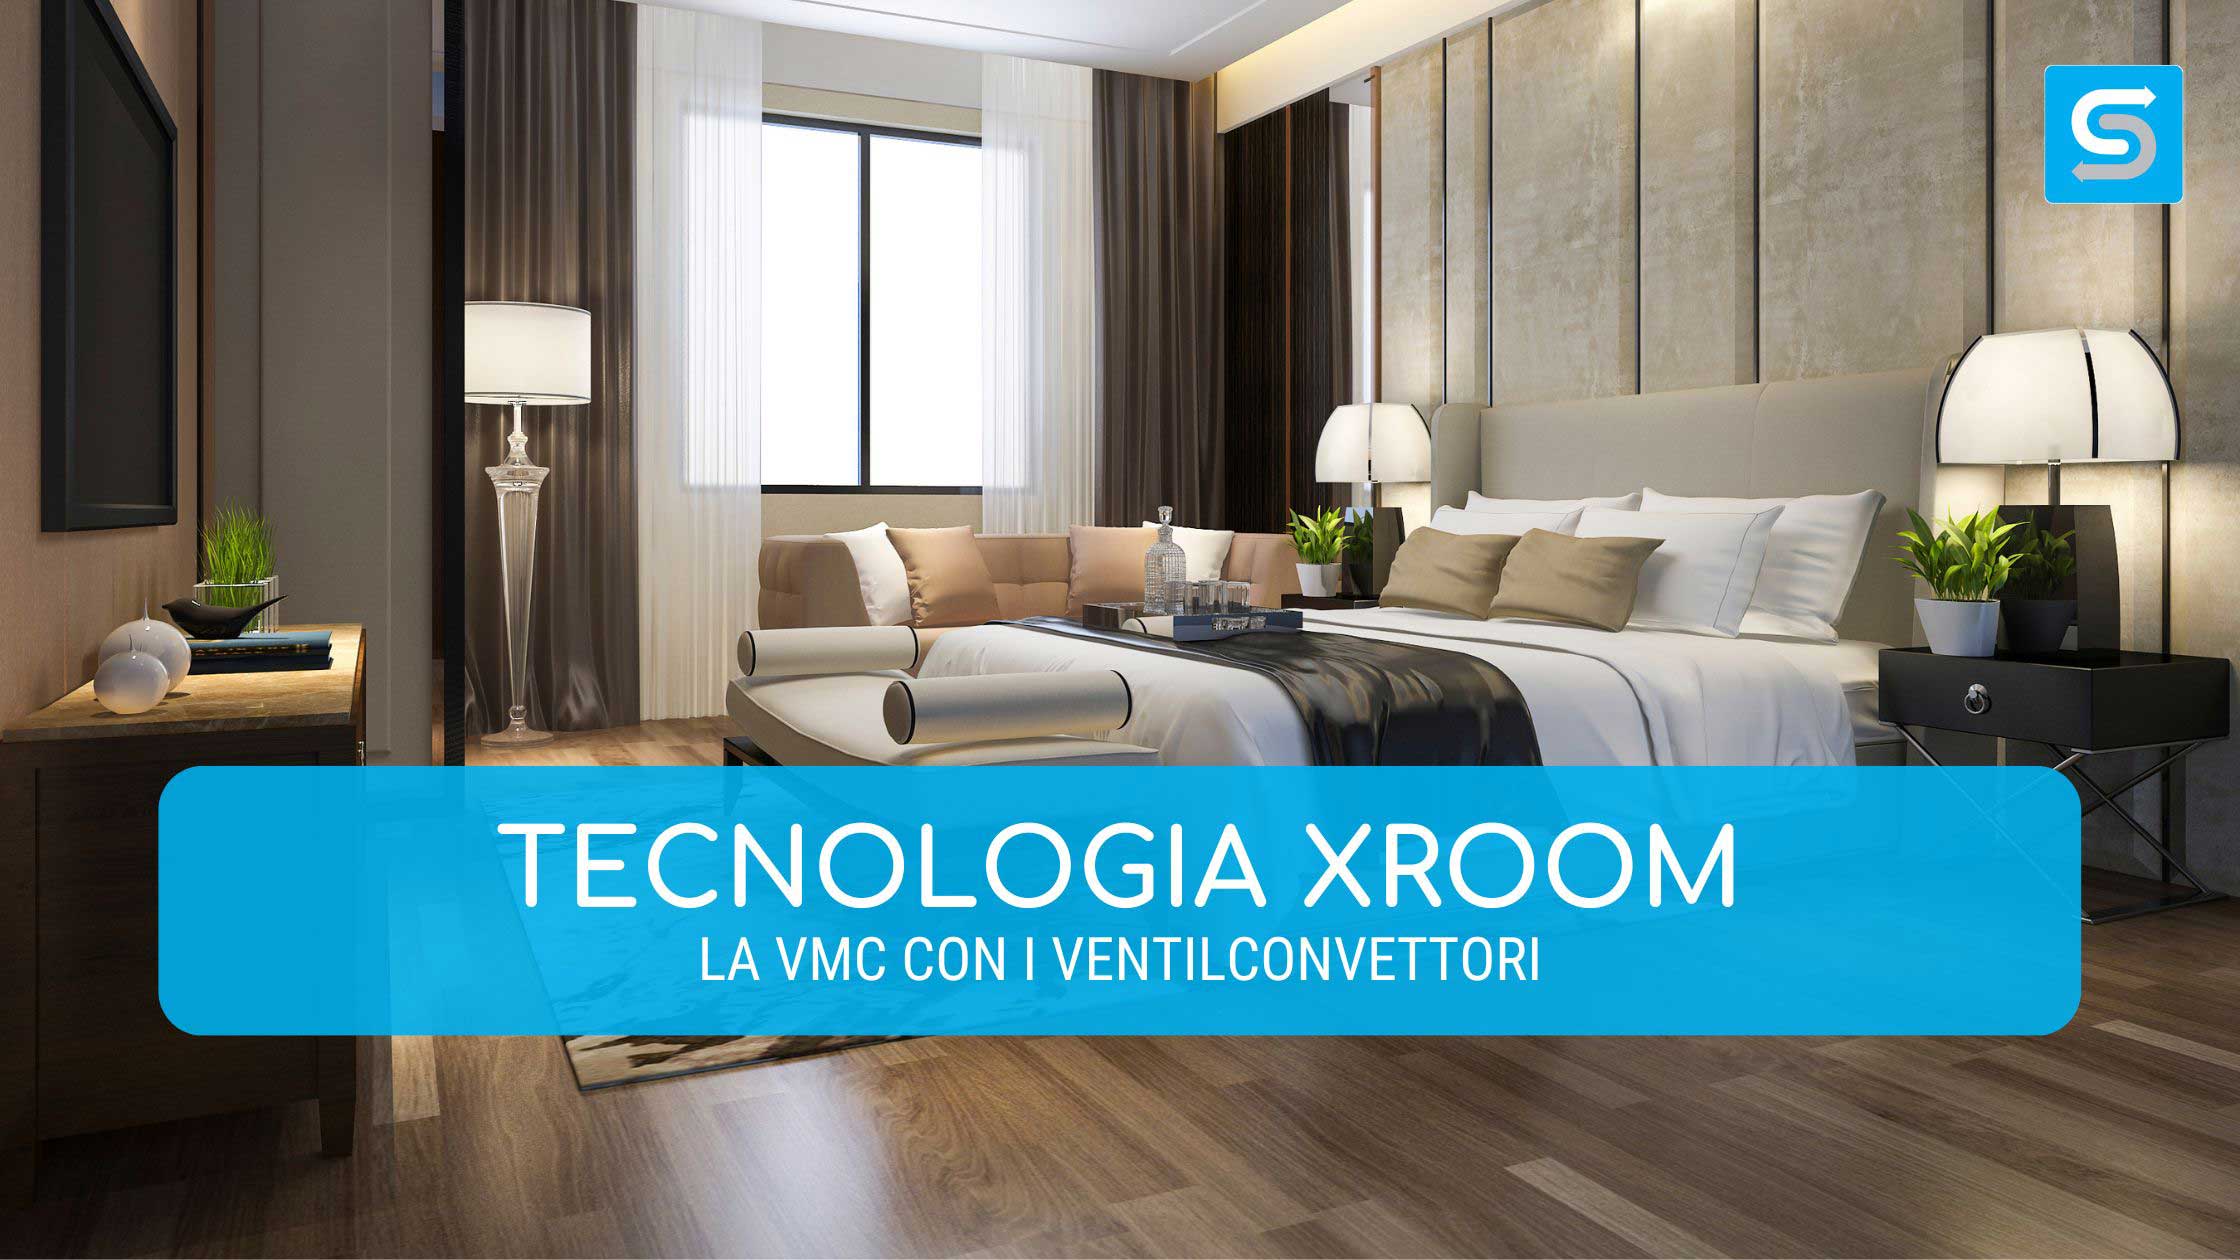 Tecnologia Xroom di Sire: la VMC con i ventilconvettori